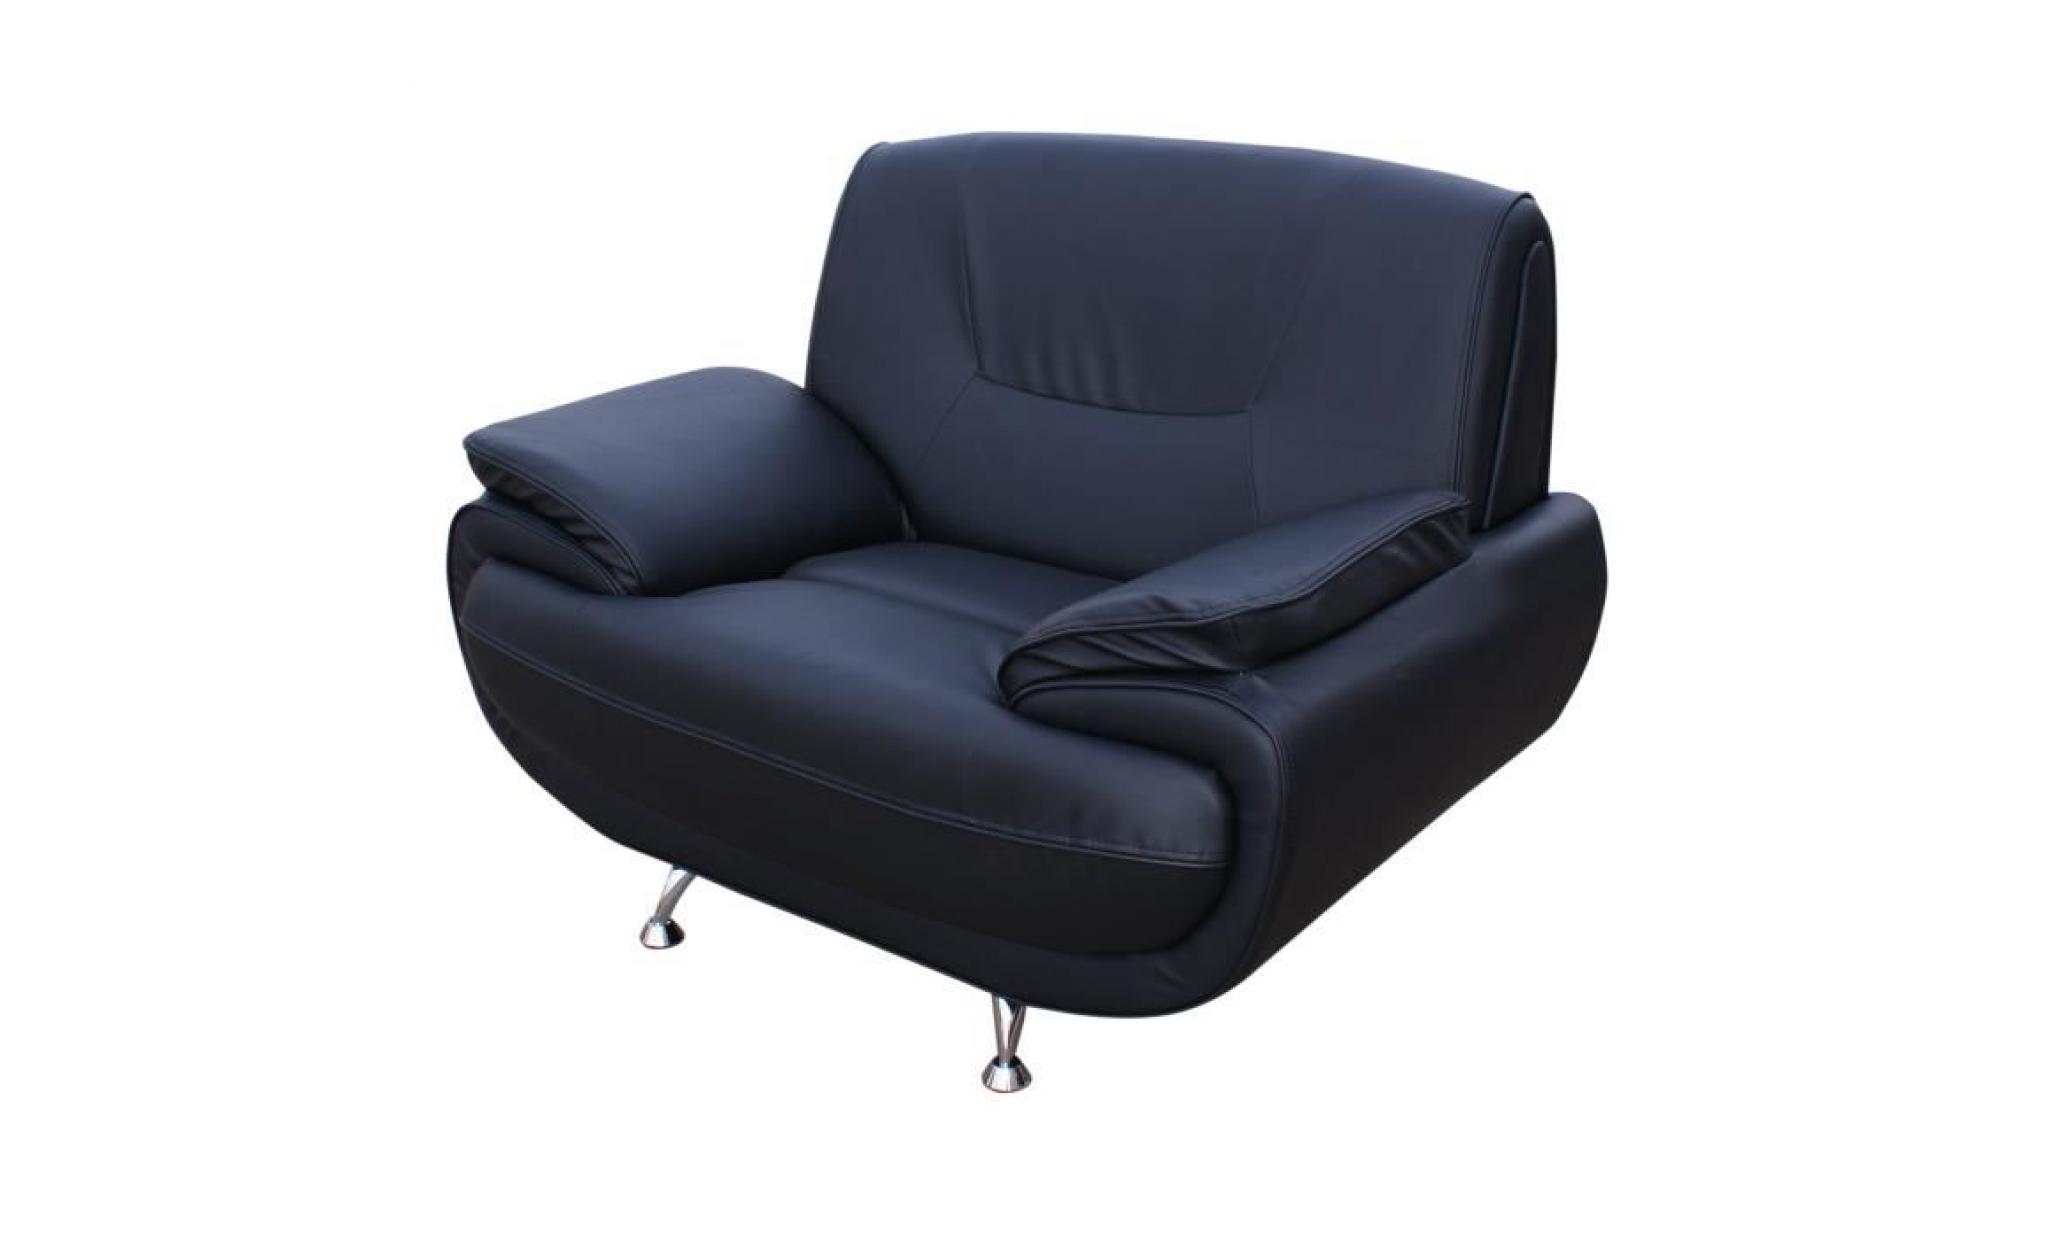 spacio fauteuil   simili noir   contemporain   l 134 x p 86 cm